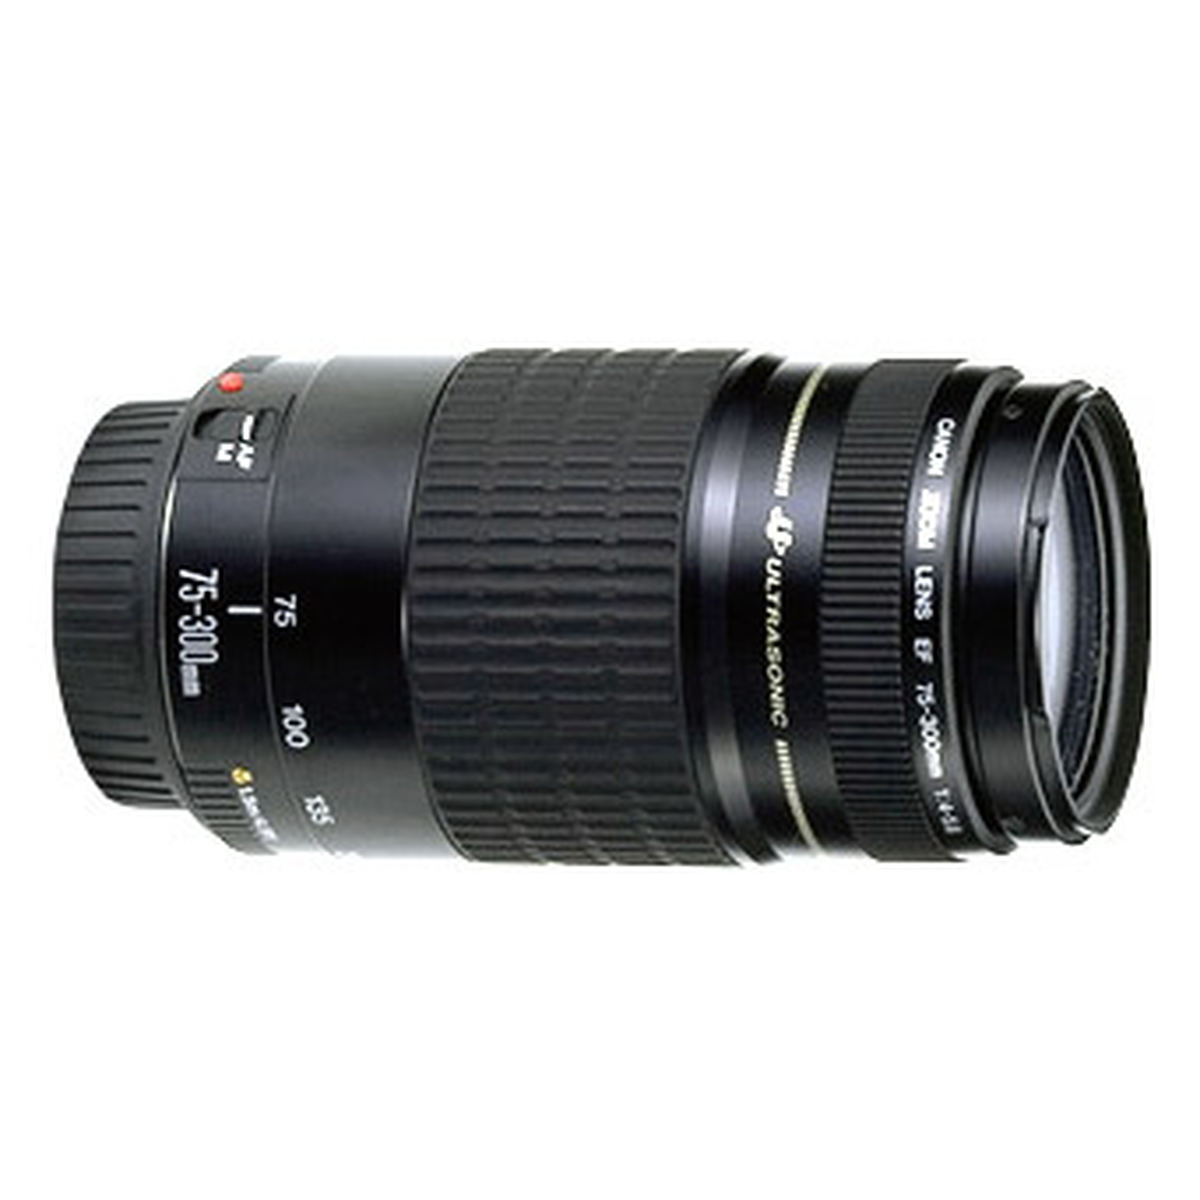 Canon EF 75-300mm f/4-5.6 USM : Caratteristiche e Opinioni | JuzaPhoto